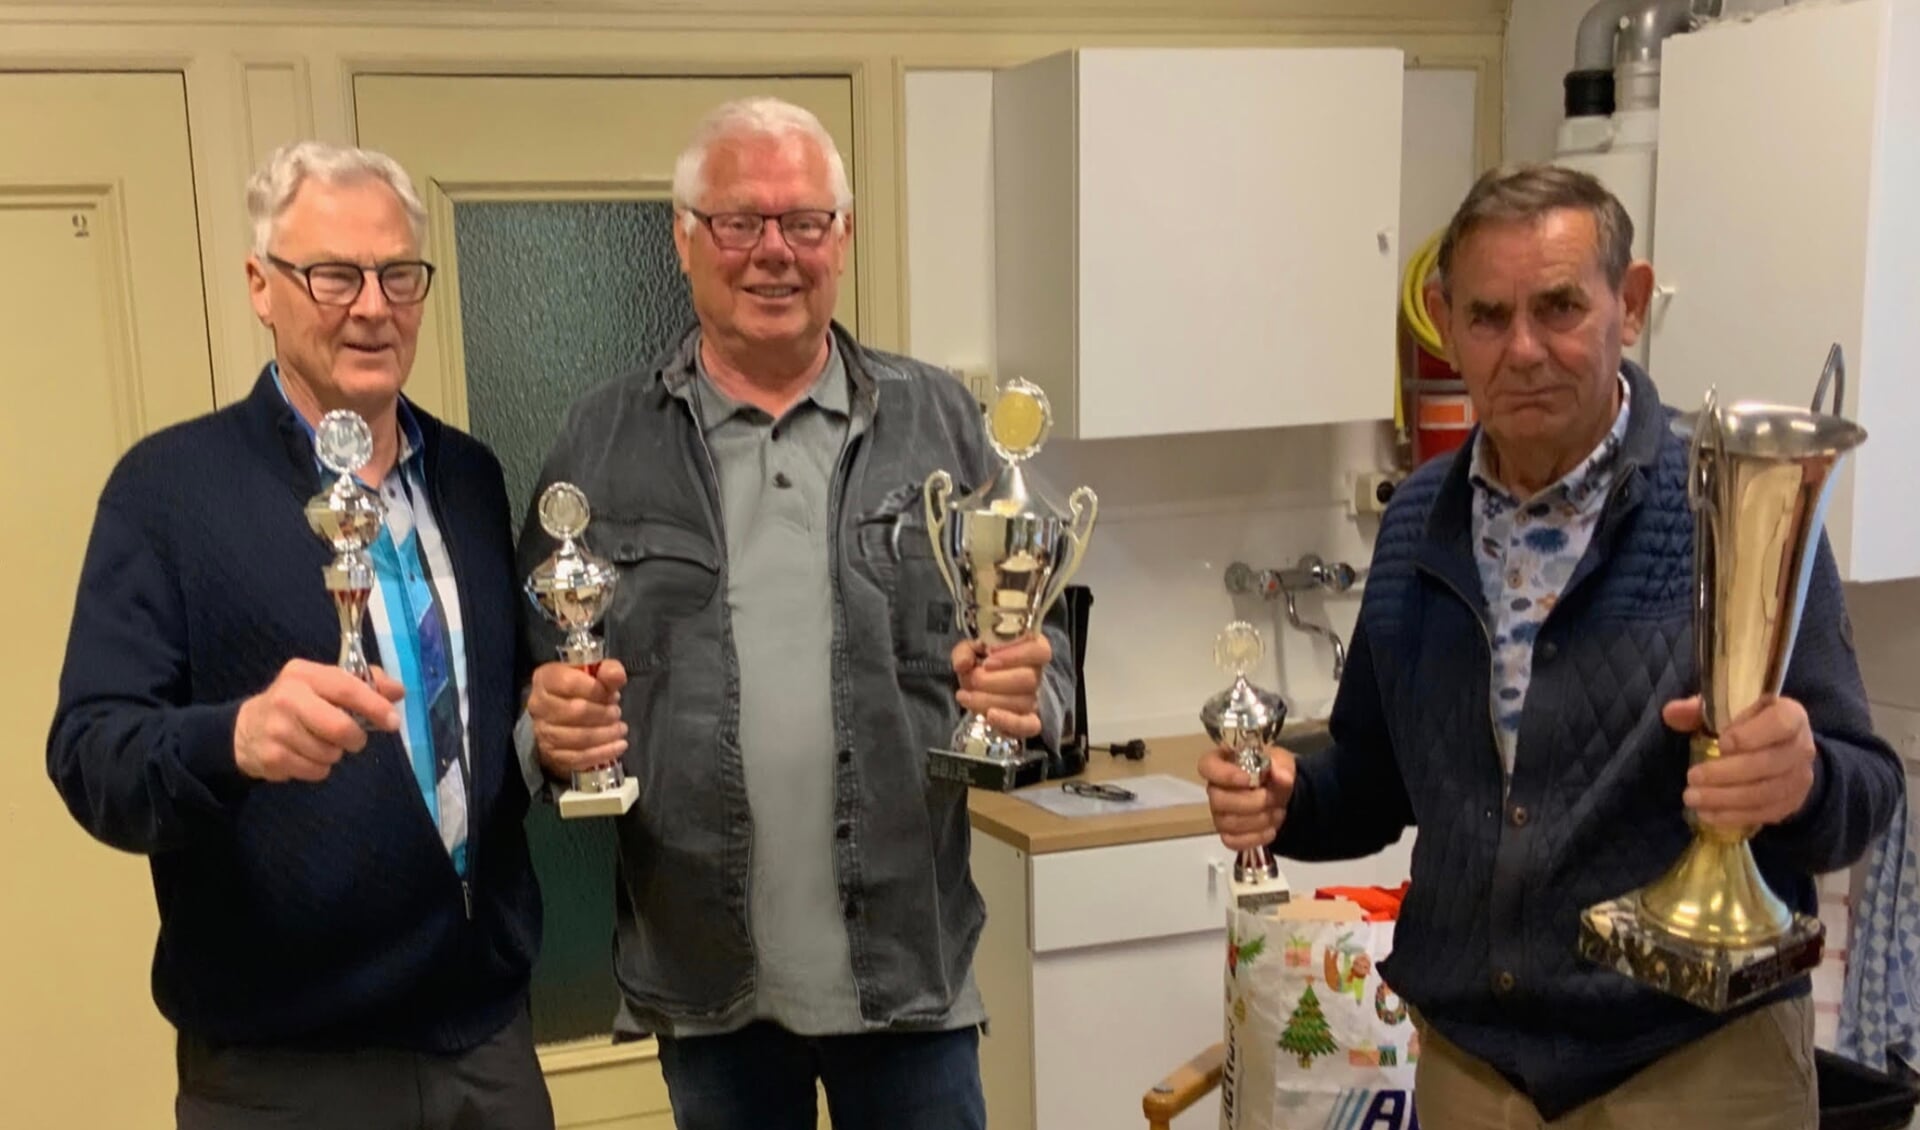 Vlnr: Stef Lippes de Rapid Kampioen (sneldammen), Jan Kloes de nieuwe Clubkampioen en Aad Diemeer de winnaar van het Wim van der Sluis Bekertoernooi